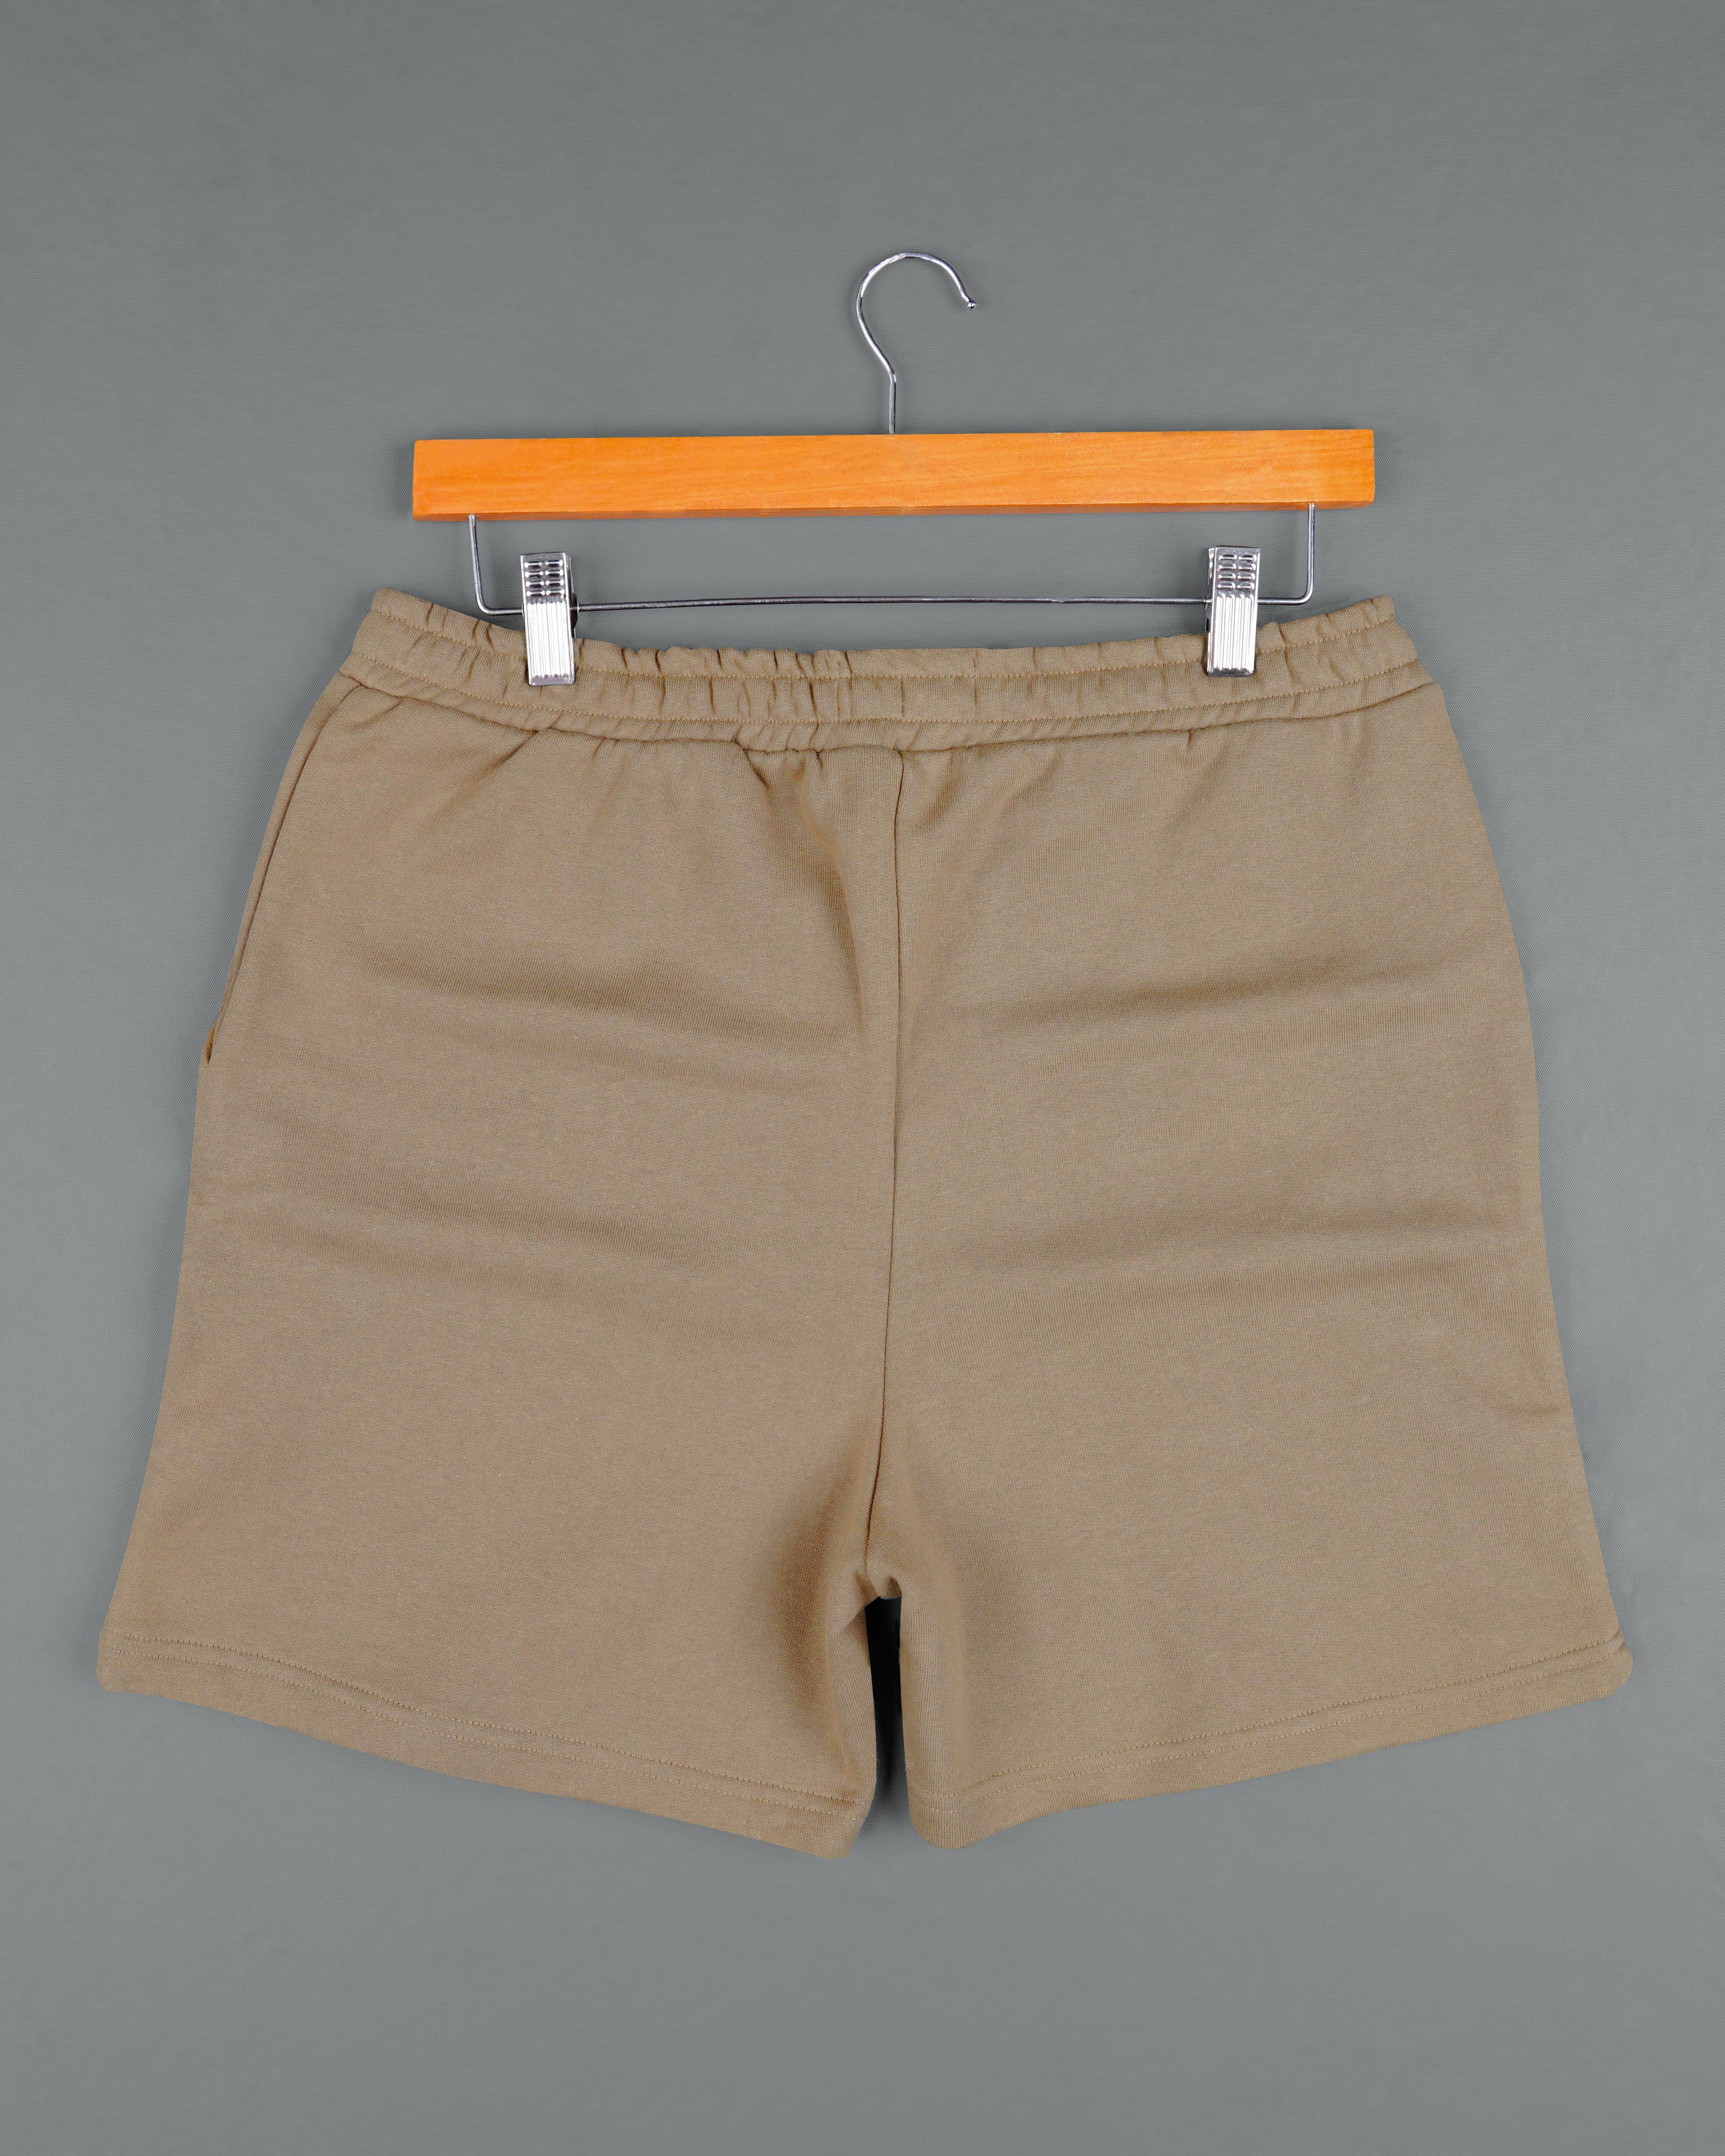 Sandrift Brown Premium Cotton Sweatshirt with Shorts Combo TS640-SR173-S, TS640-SR173-M, TS640-SR173-L, TS640-SR173-XL, TS640-SR173-XXL